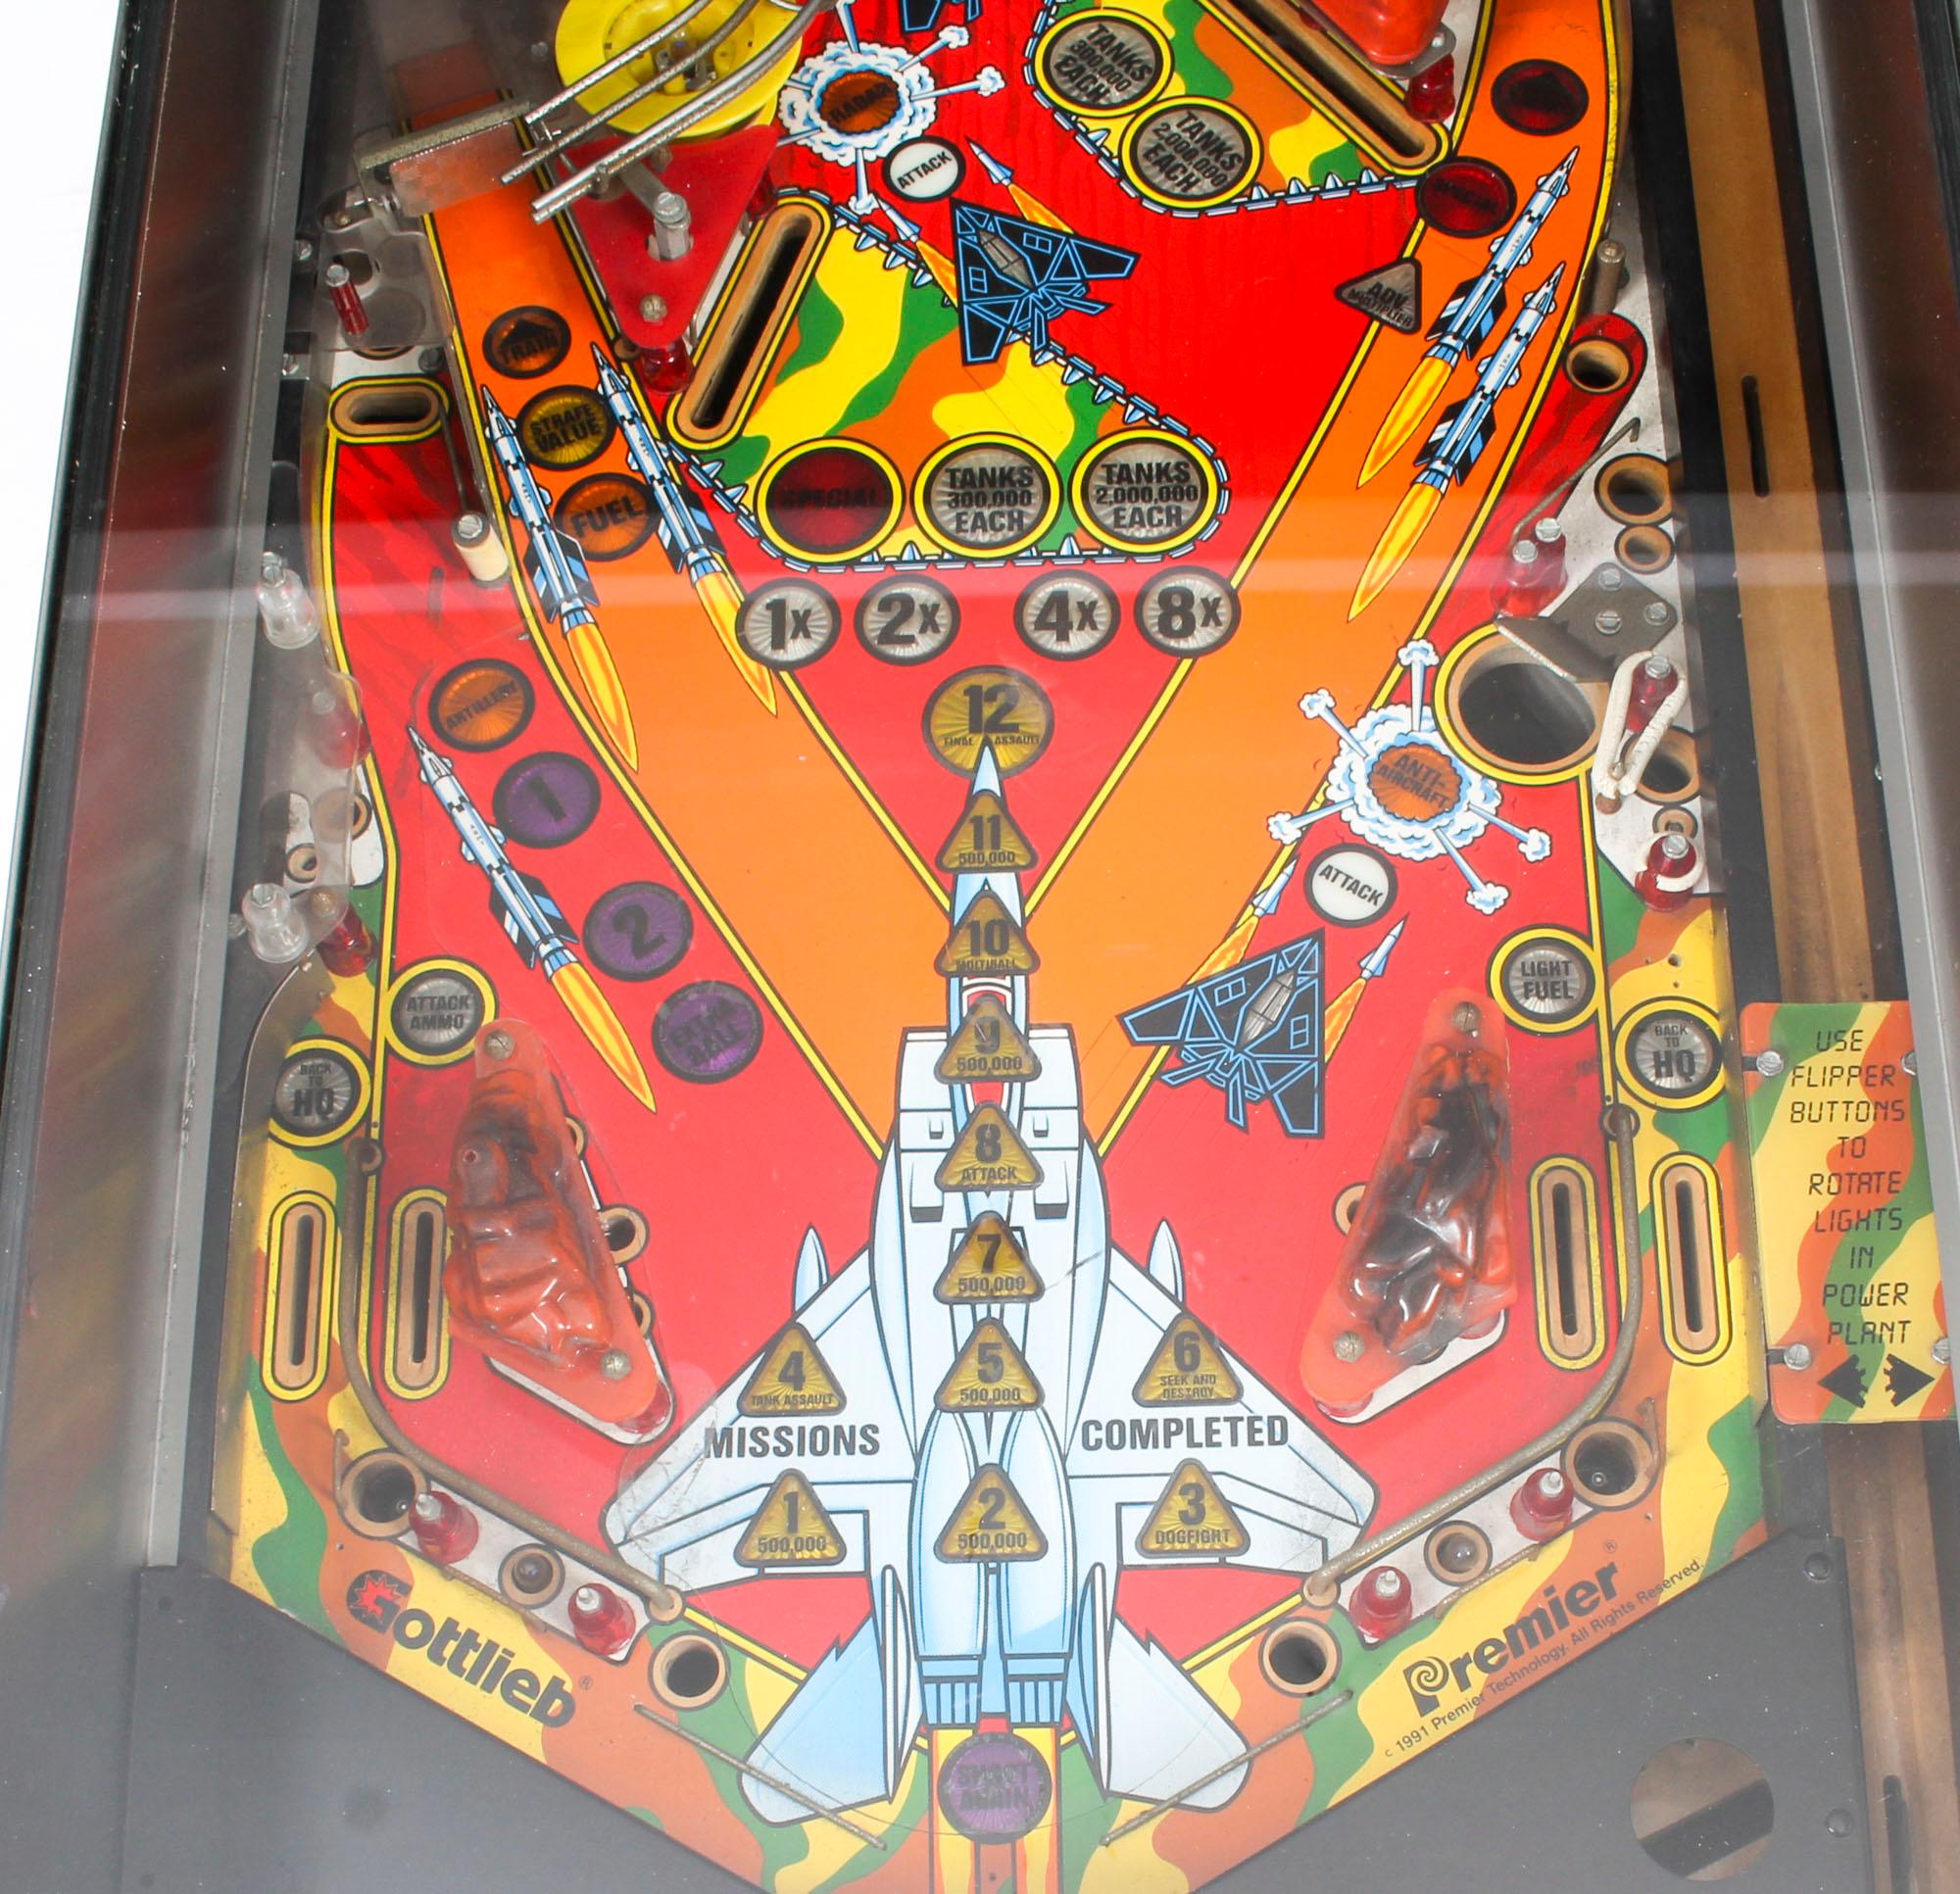 gottlieb pinball machines 1970s